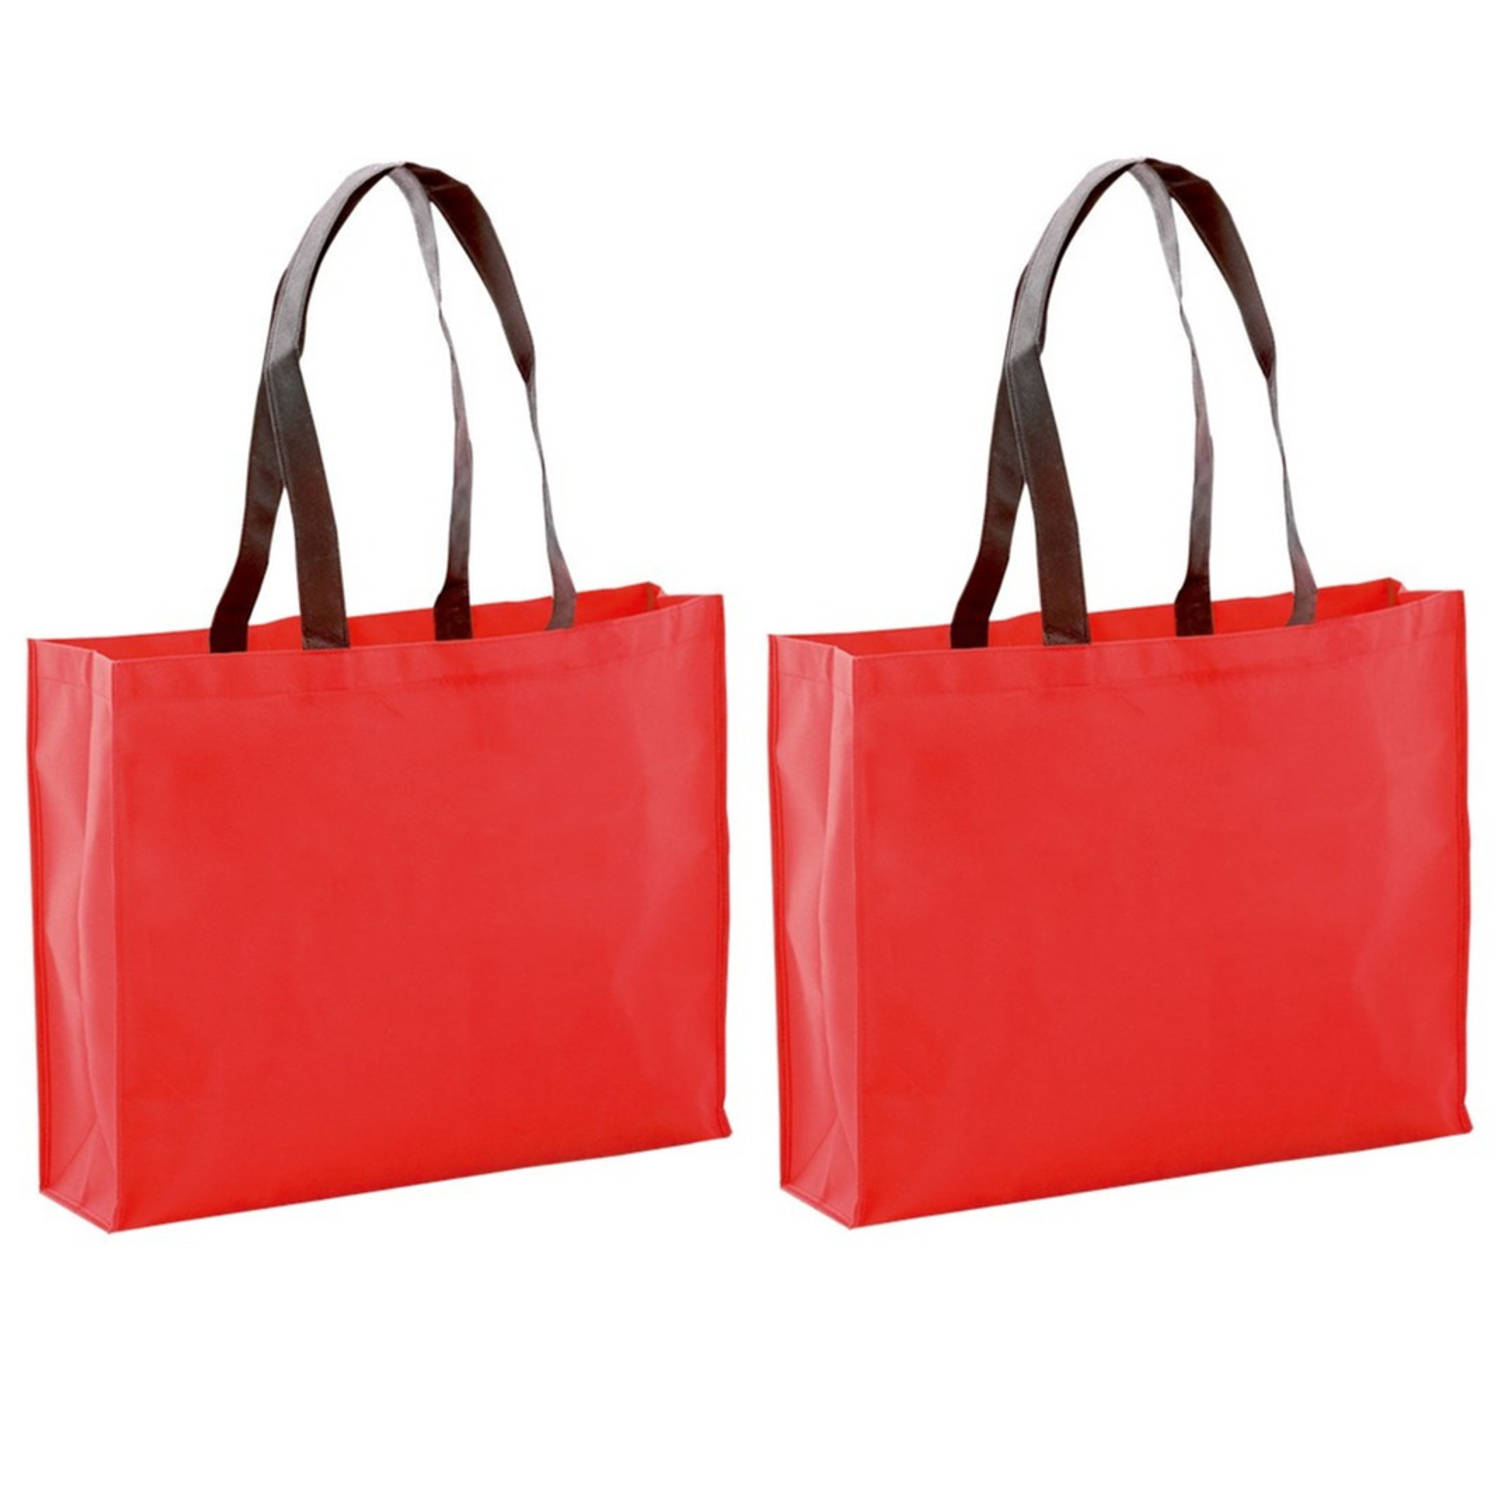 2x Stuks Draagtassen-schoudertassen-boodschappentassen In De Kleur Rood 40 X 32 X 11 Cm Boodschappen